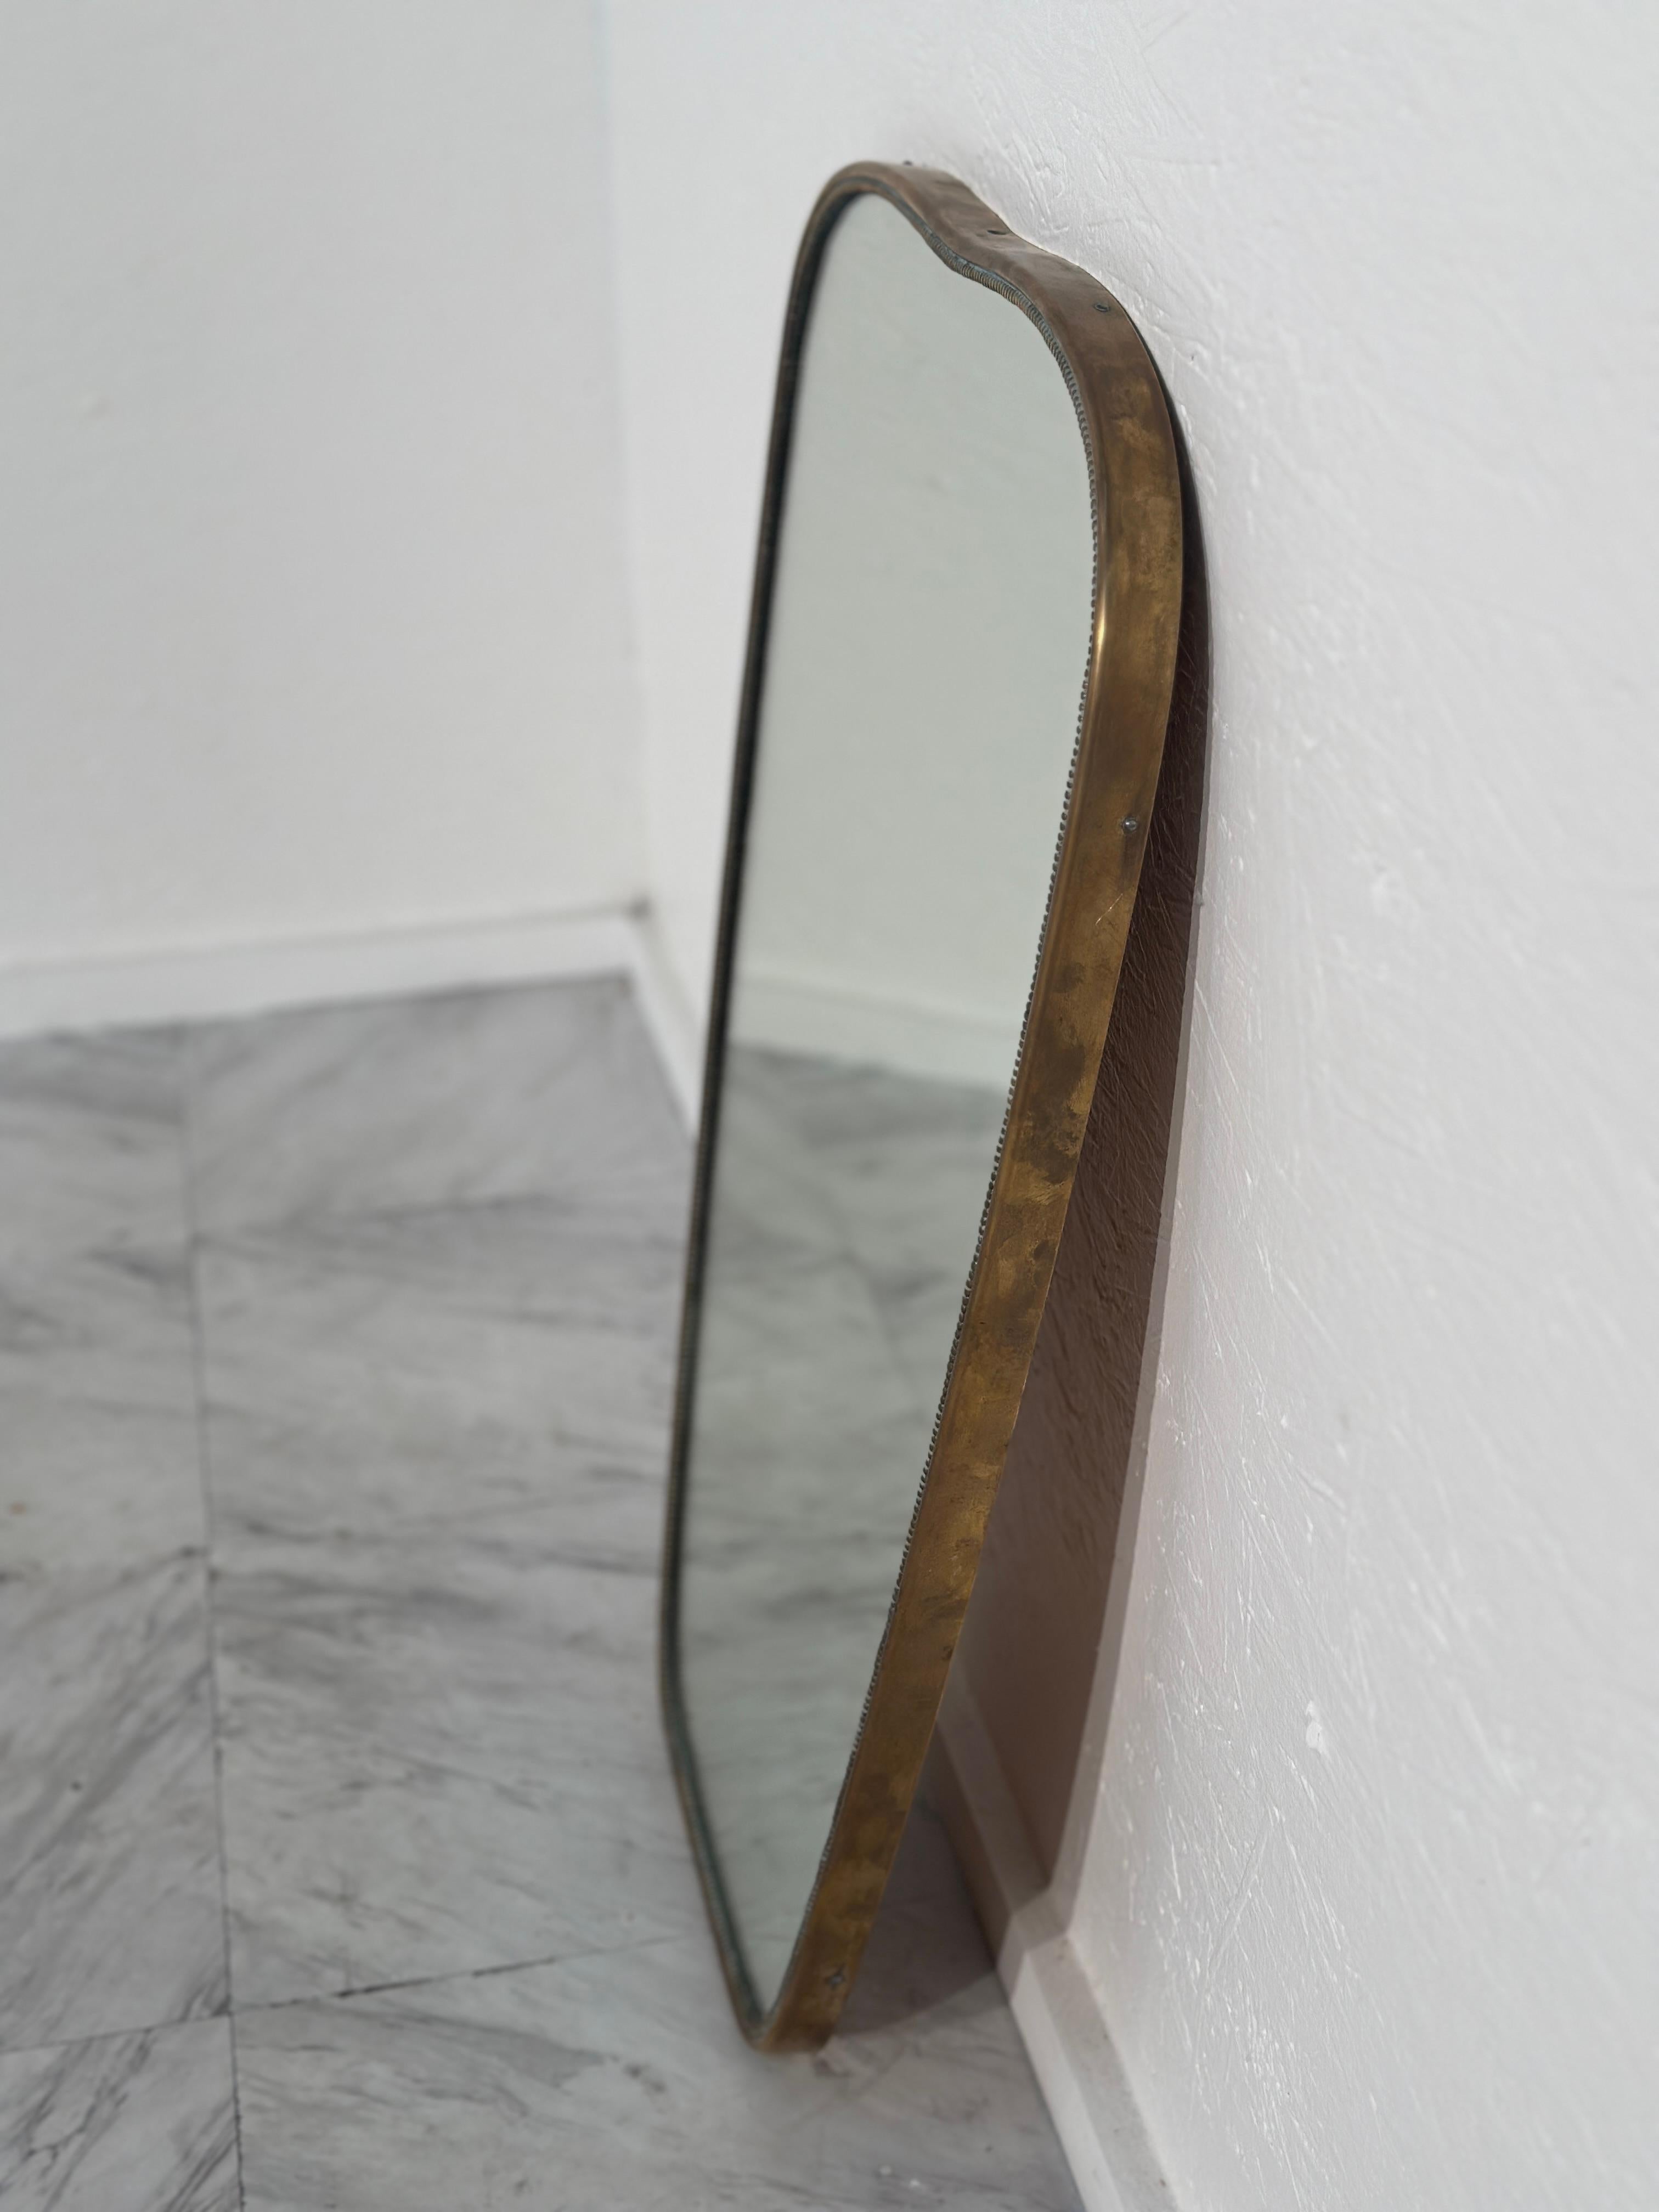 Le miroir mural rectangulaire italien vintage des années 1960 présente un cadre en laiton avec une patine d'origine, mettant en valeur son caractère élégant et vieilli dans un design épuré et intemporel.

